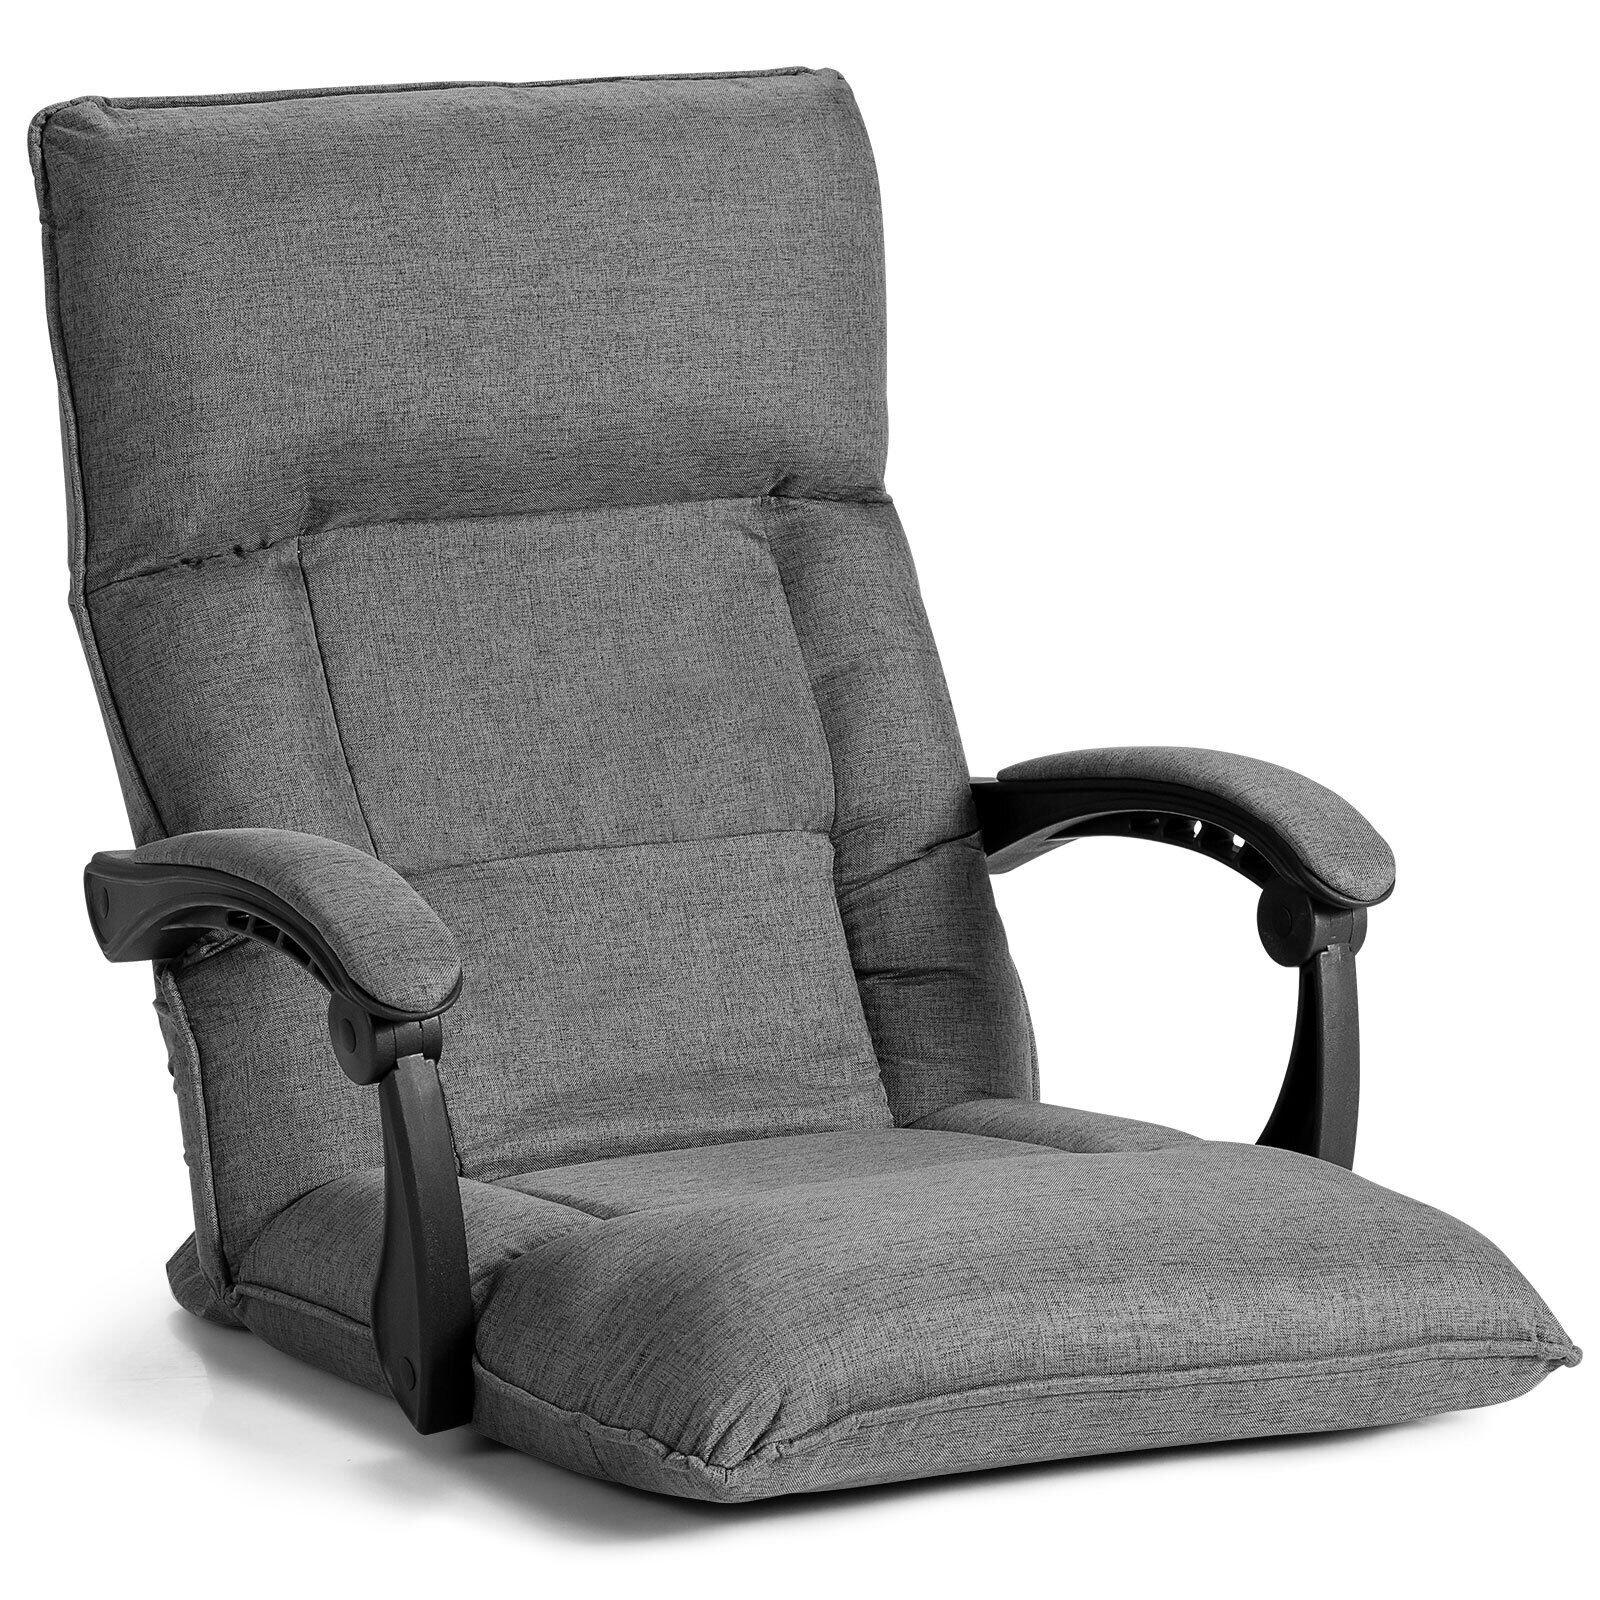 Adjustable Floor Chair Gaming Floor Chair Lazy Sofa W/ Linkage Armrest